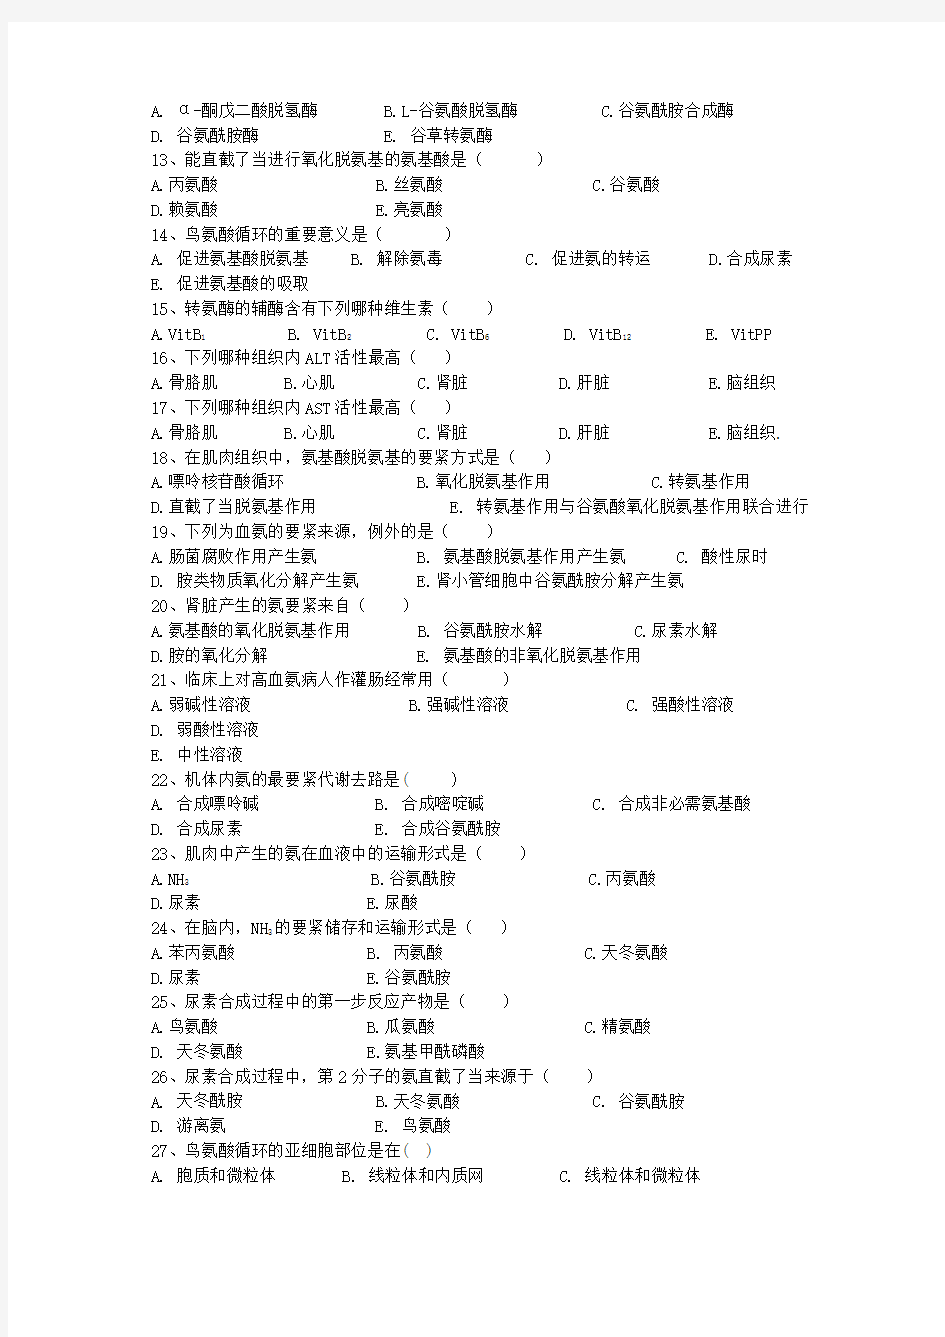 第十一章蛋白质分解代谢上海中医药大学精品课程网